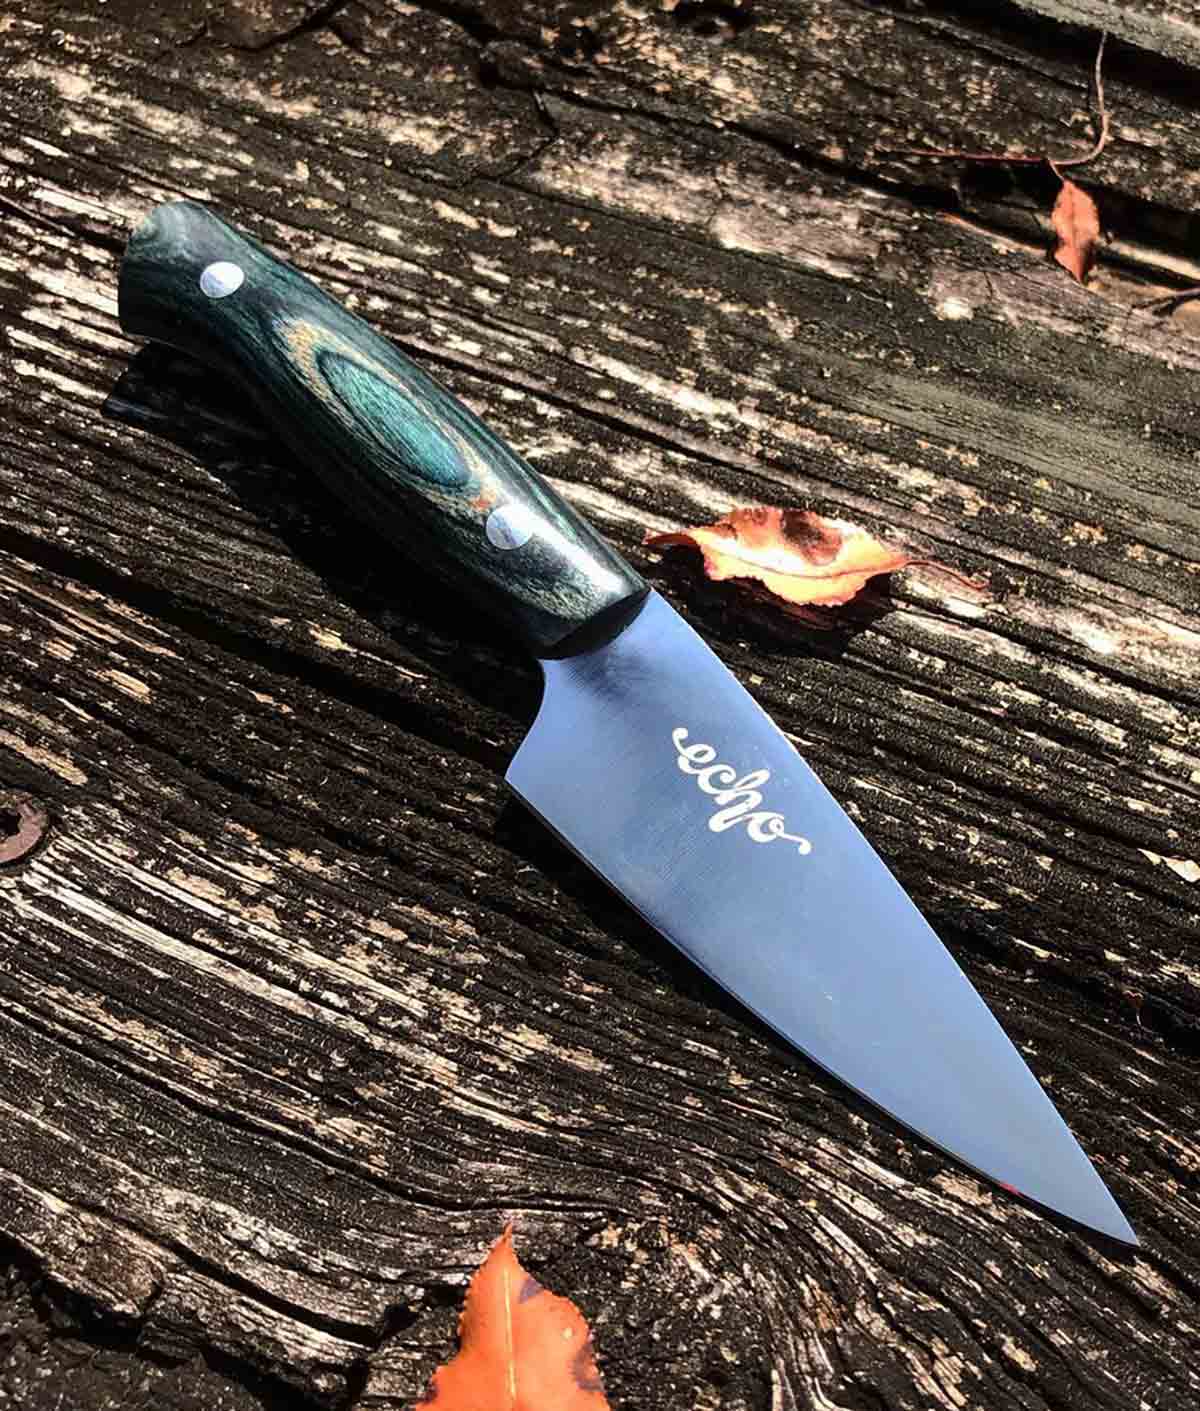 Quintin Middleton's paring knife